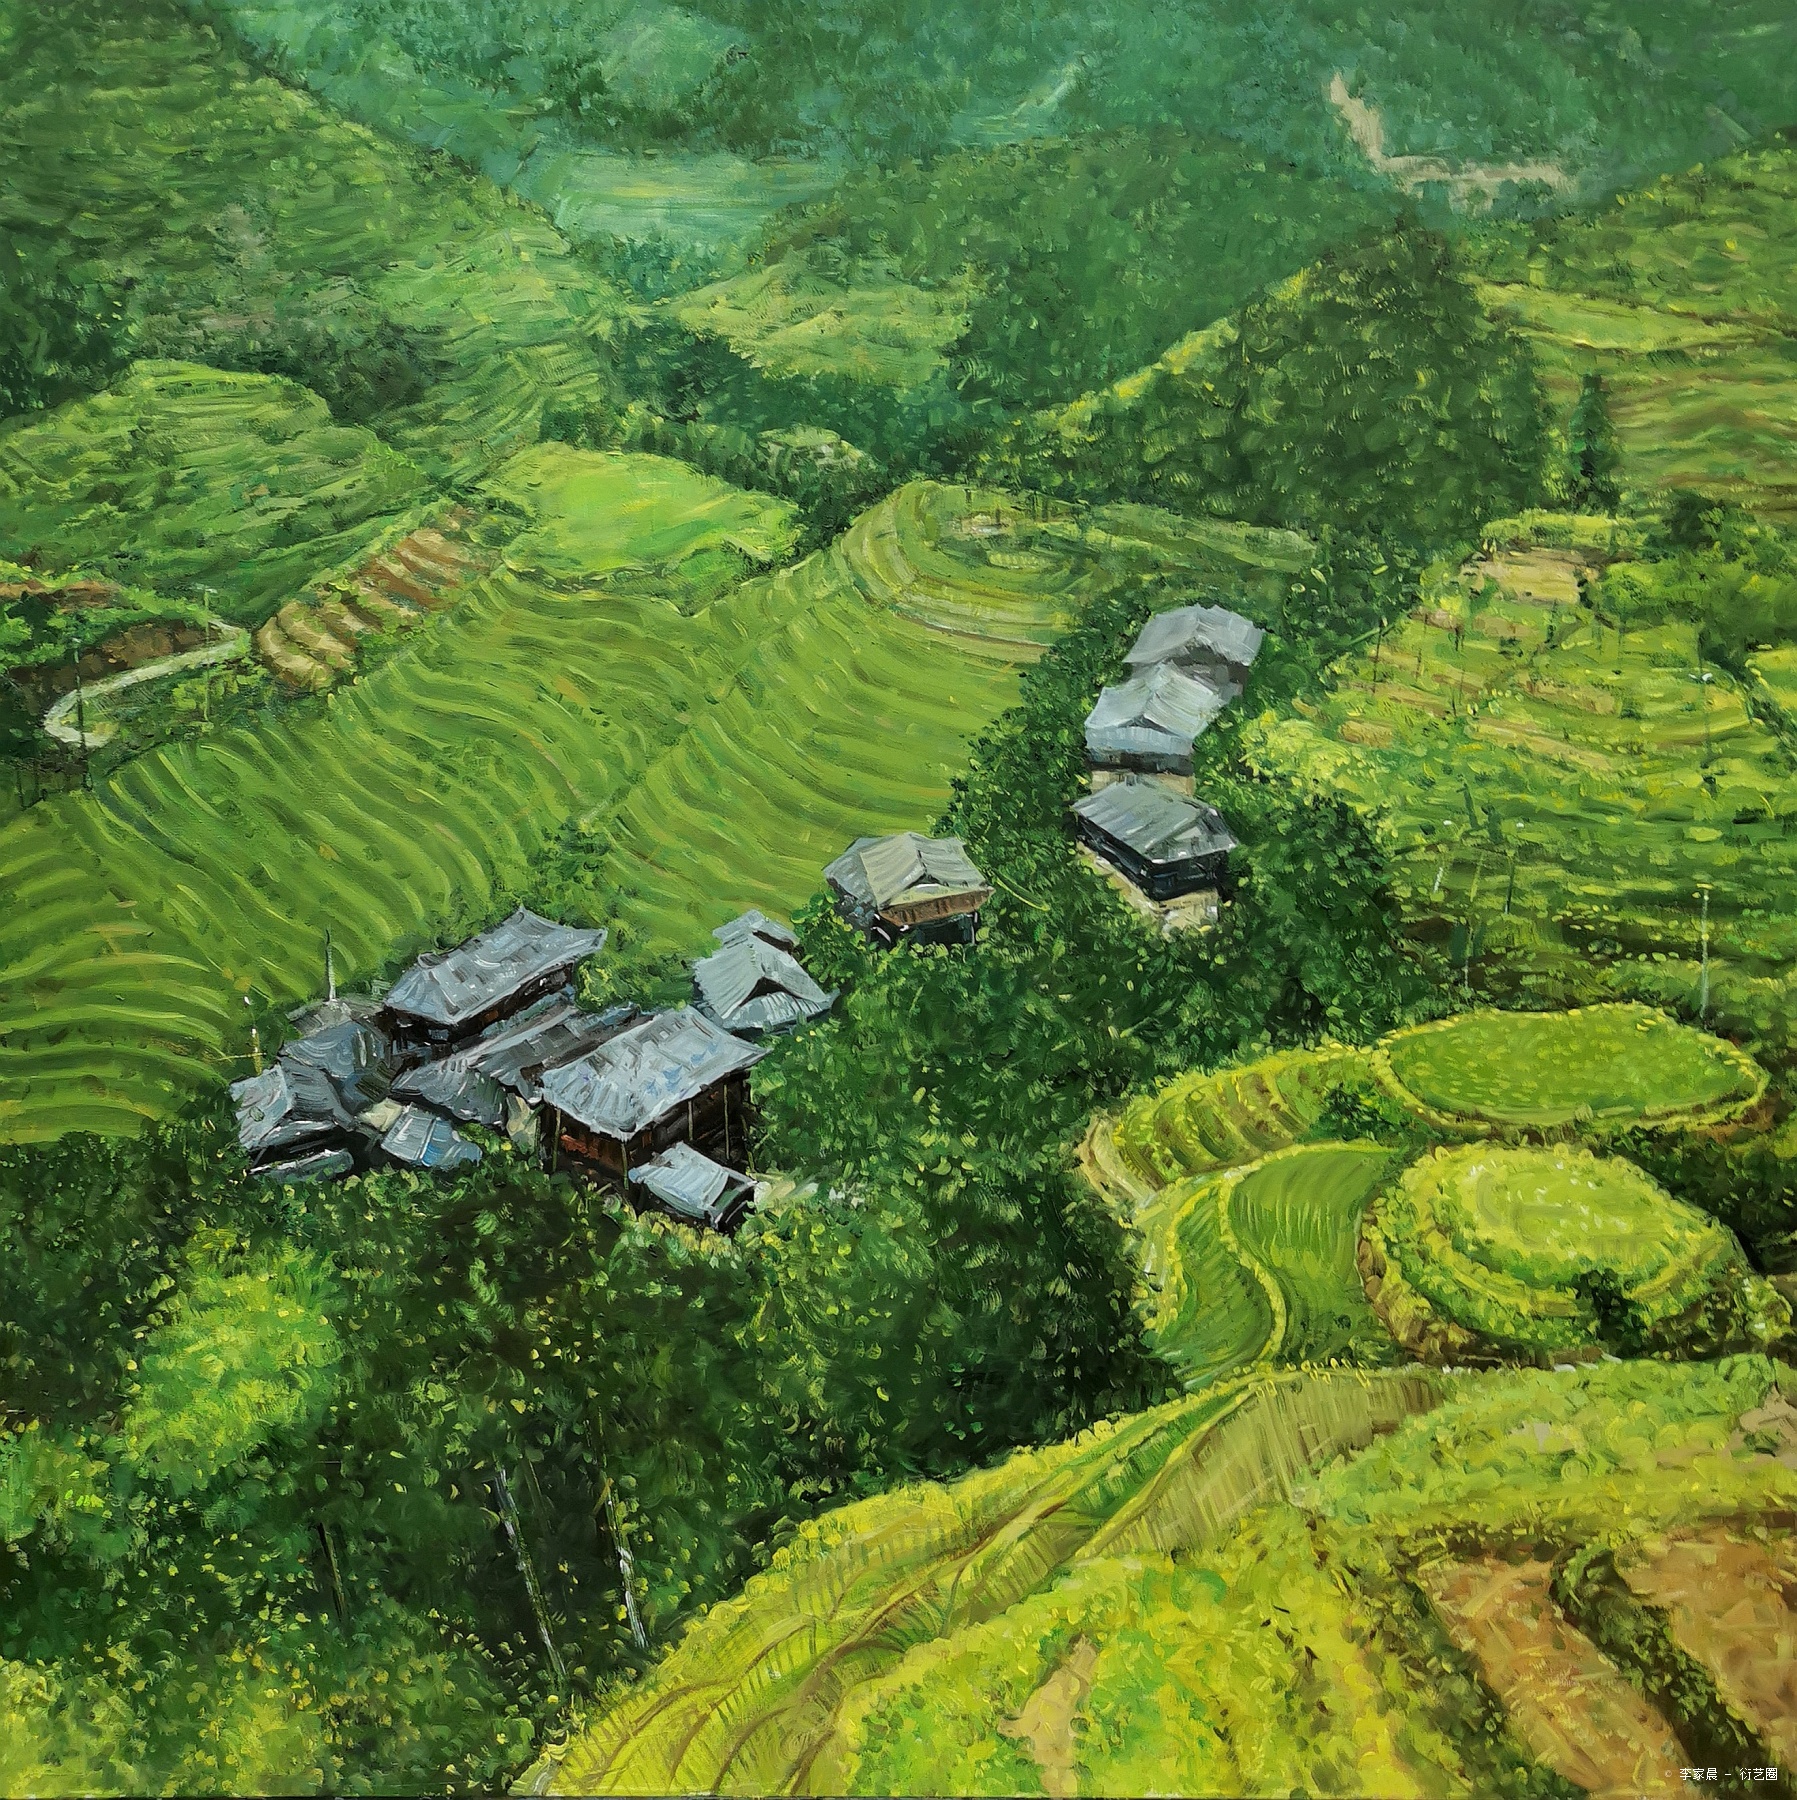 《田野–乡村》,李家晨, 2020年布面油画 